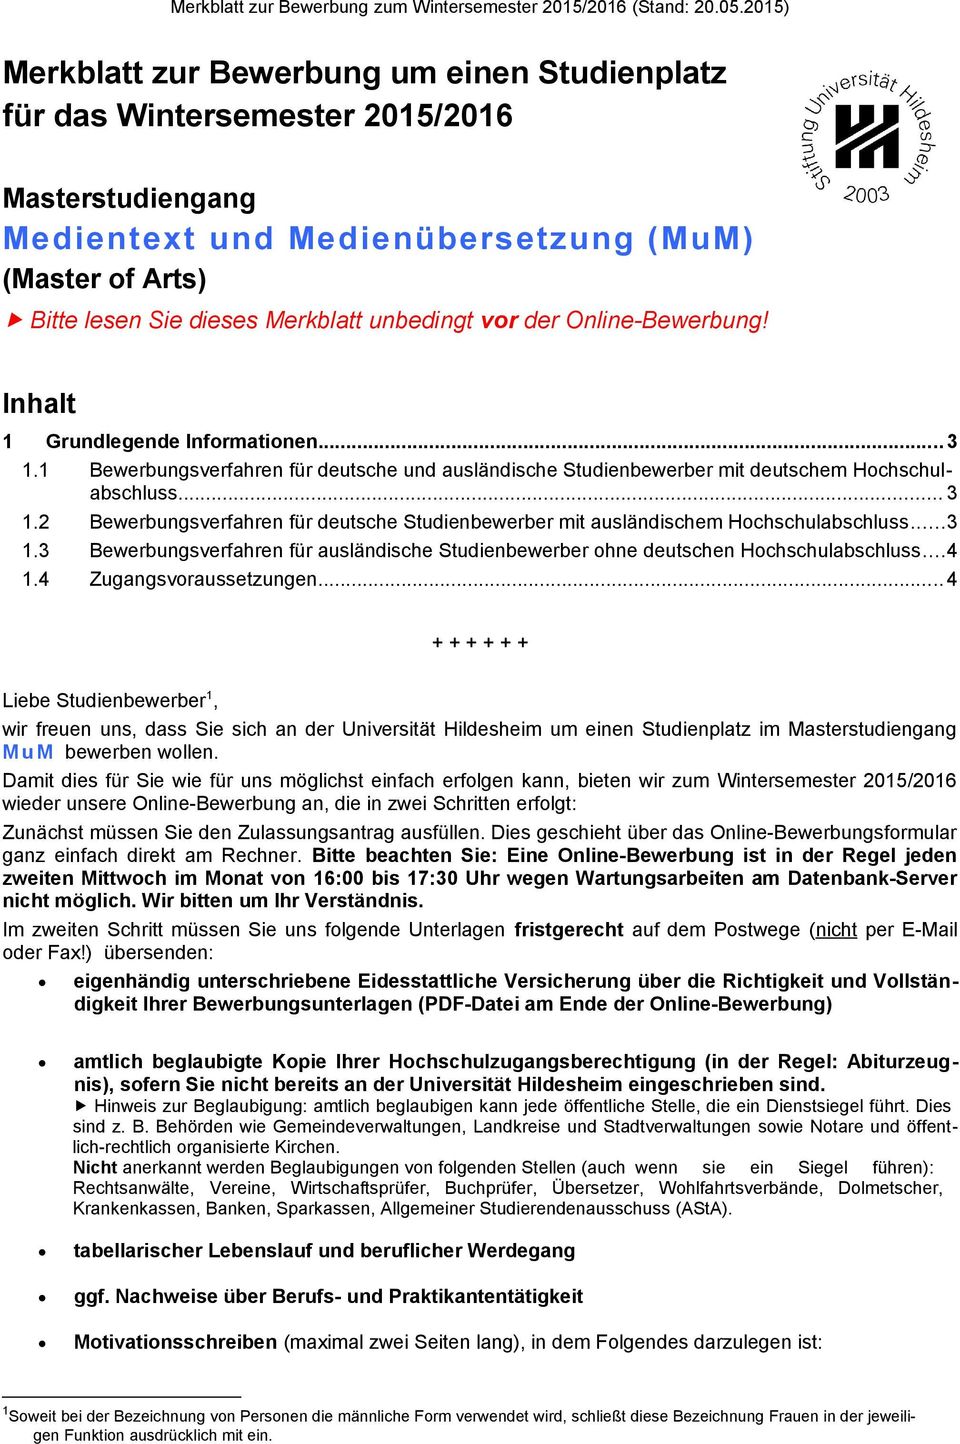 ..3 1.3 Bewerbungsverfahren für ausländische Studienbewerber ohne deutschen Hochschulabschluss...4 1.4 Zugangsvoraussetzungen.